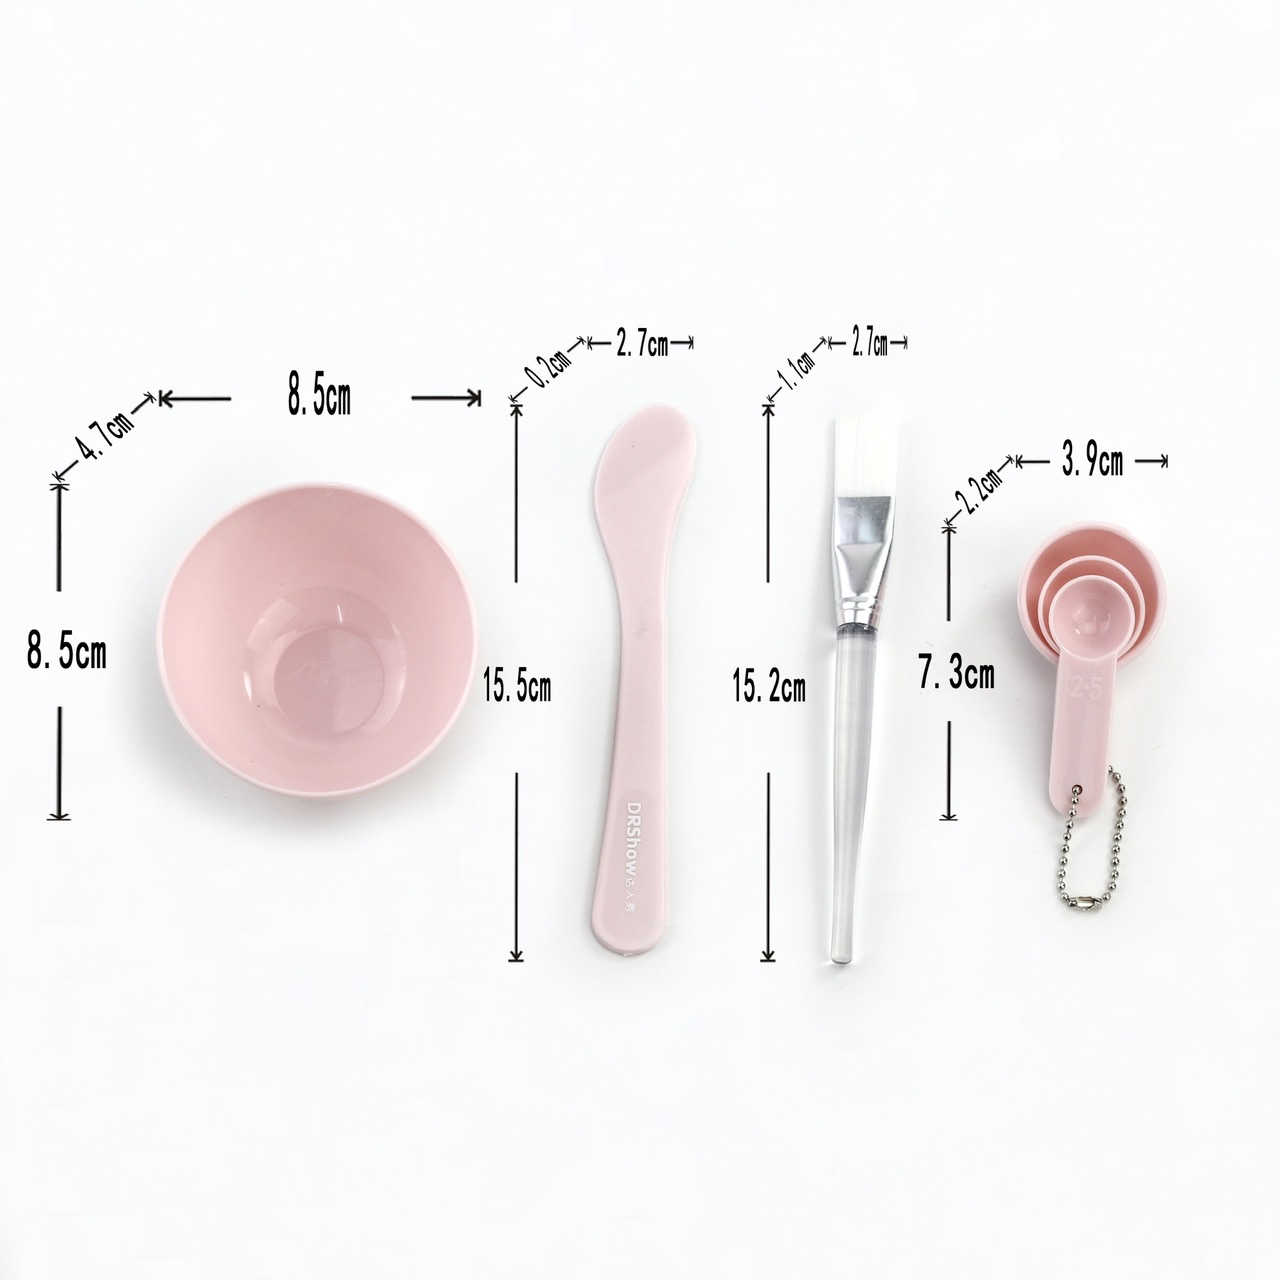 DIY面膜碗 调膜碗面膜棒面膜刷计量器4件套美容碗 套装美容工具